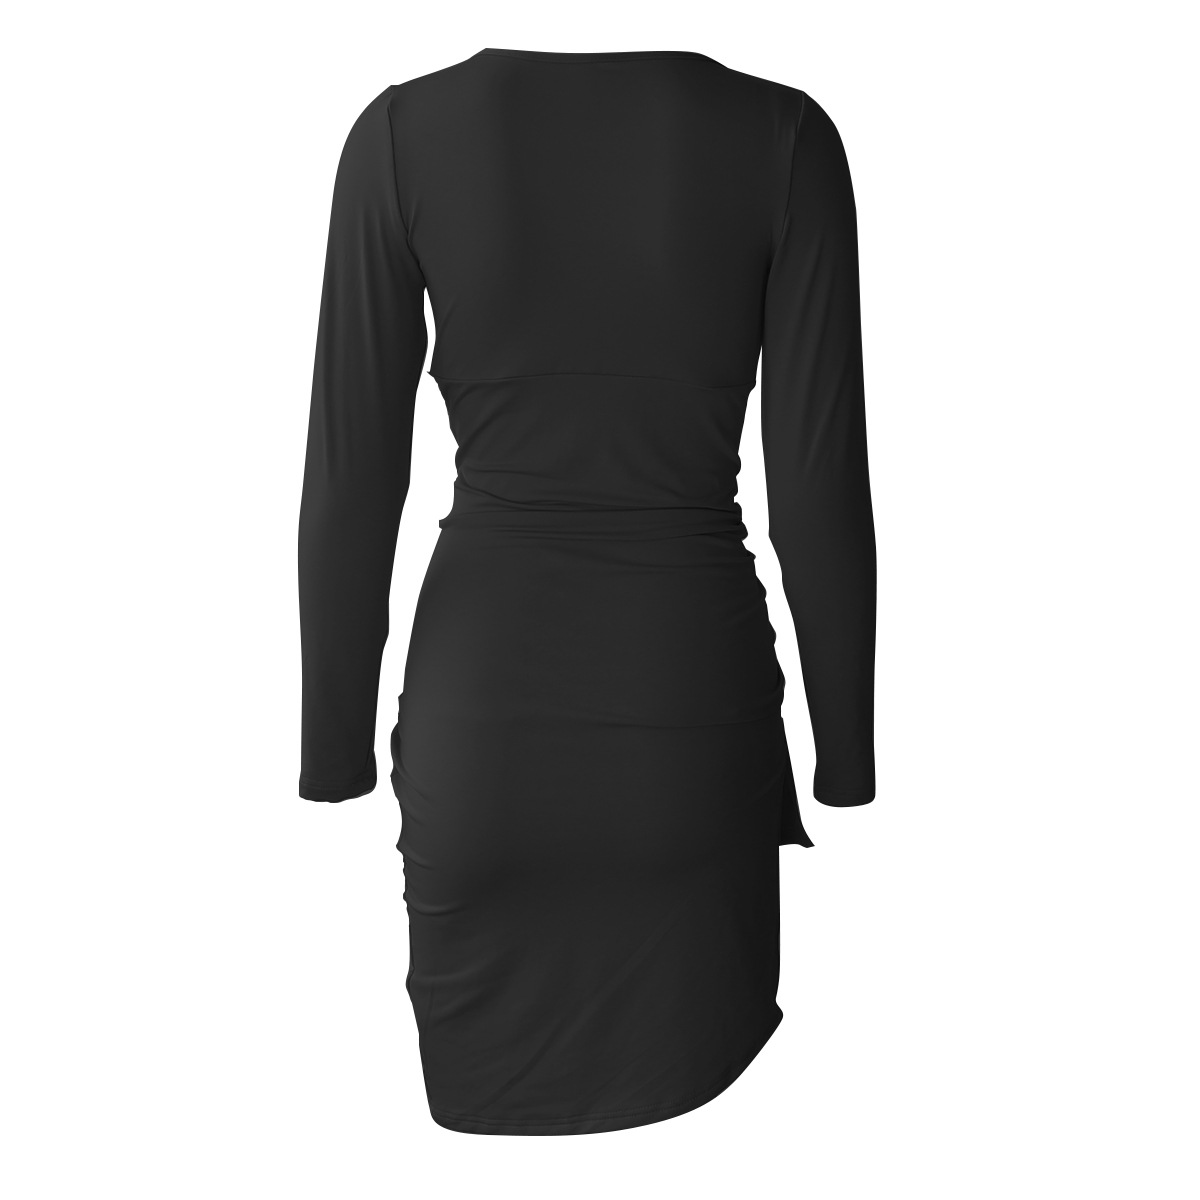 irregular V-neck long-sleeved fold dress NSZY17836